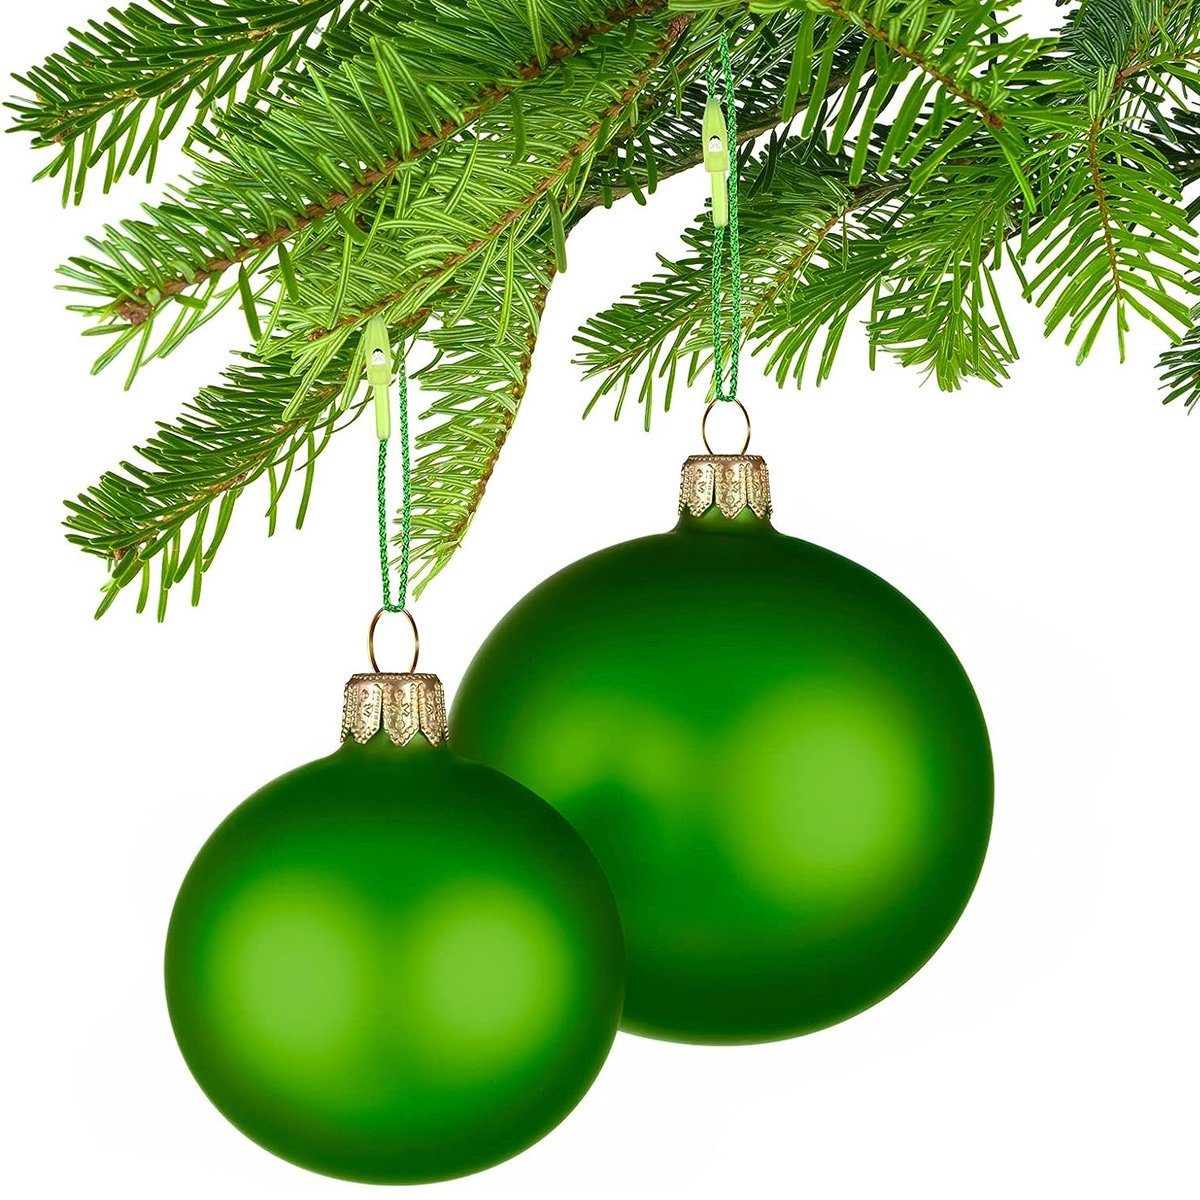 Grün Hang Dekohänger Jormftte mit Weihnachtsschmuck Schnappverschluss Aufhänger für Tag